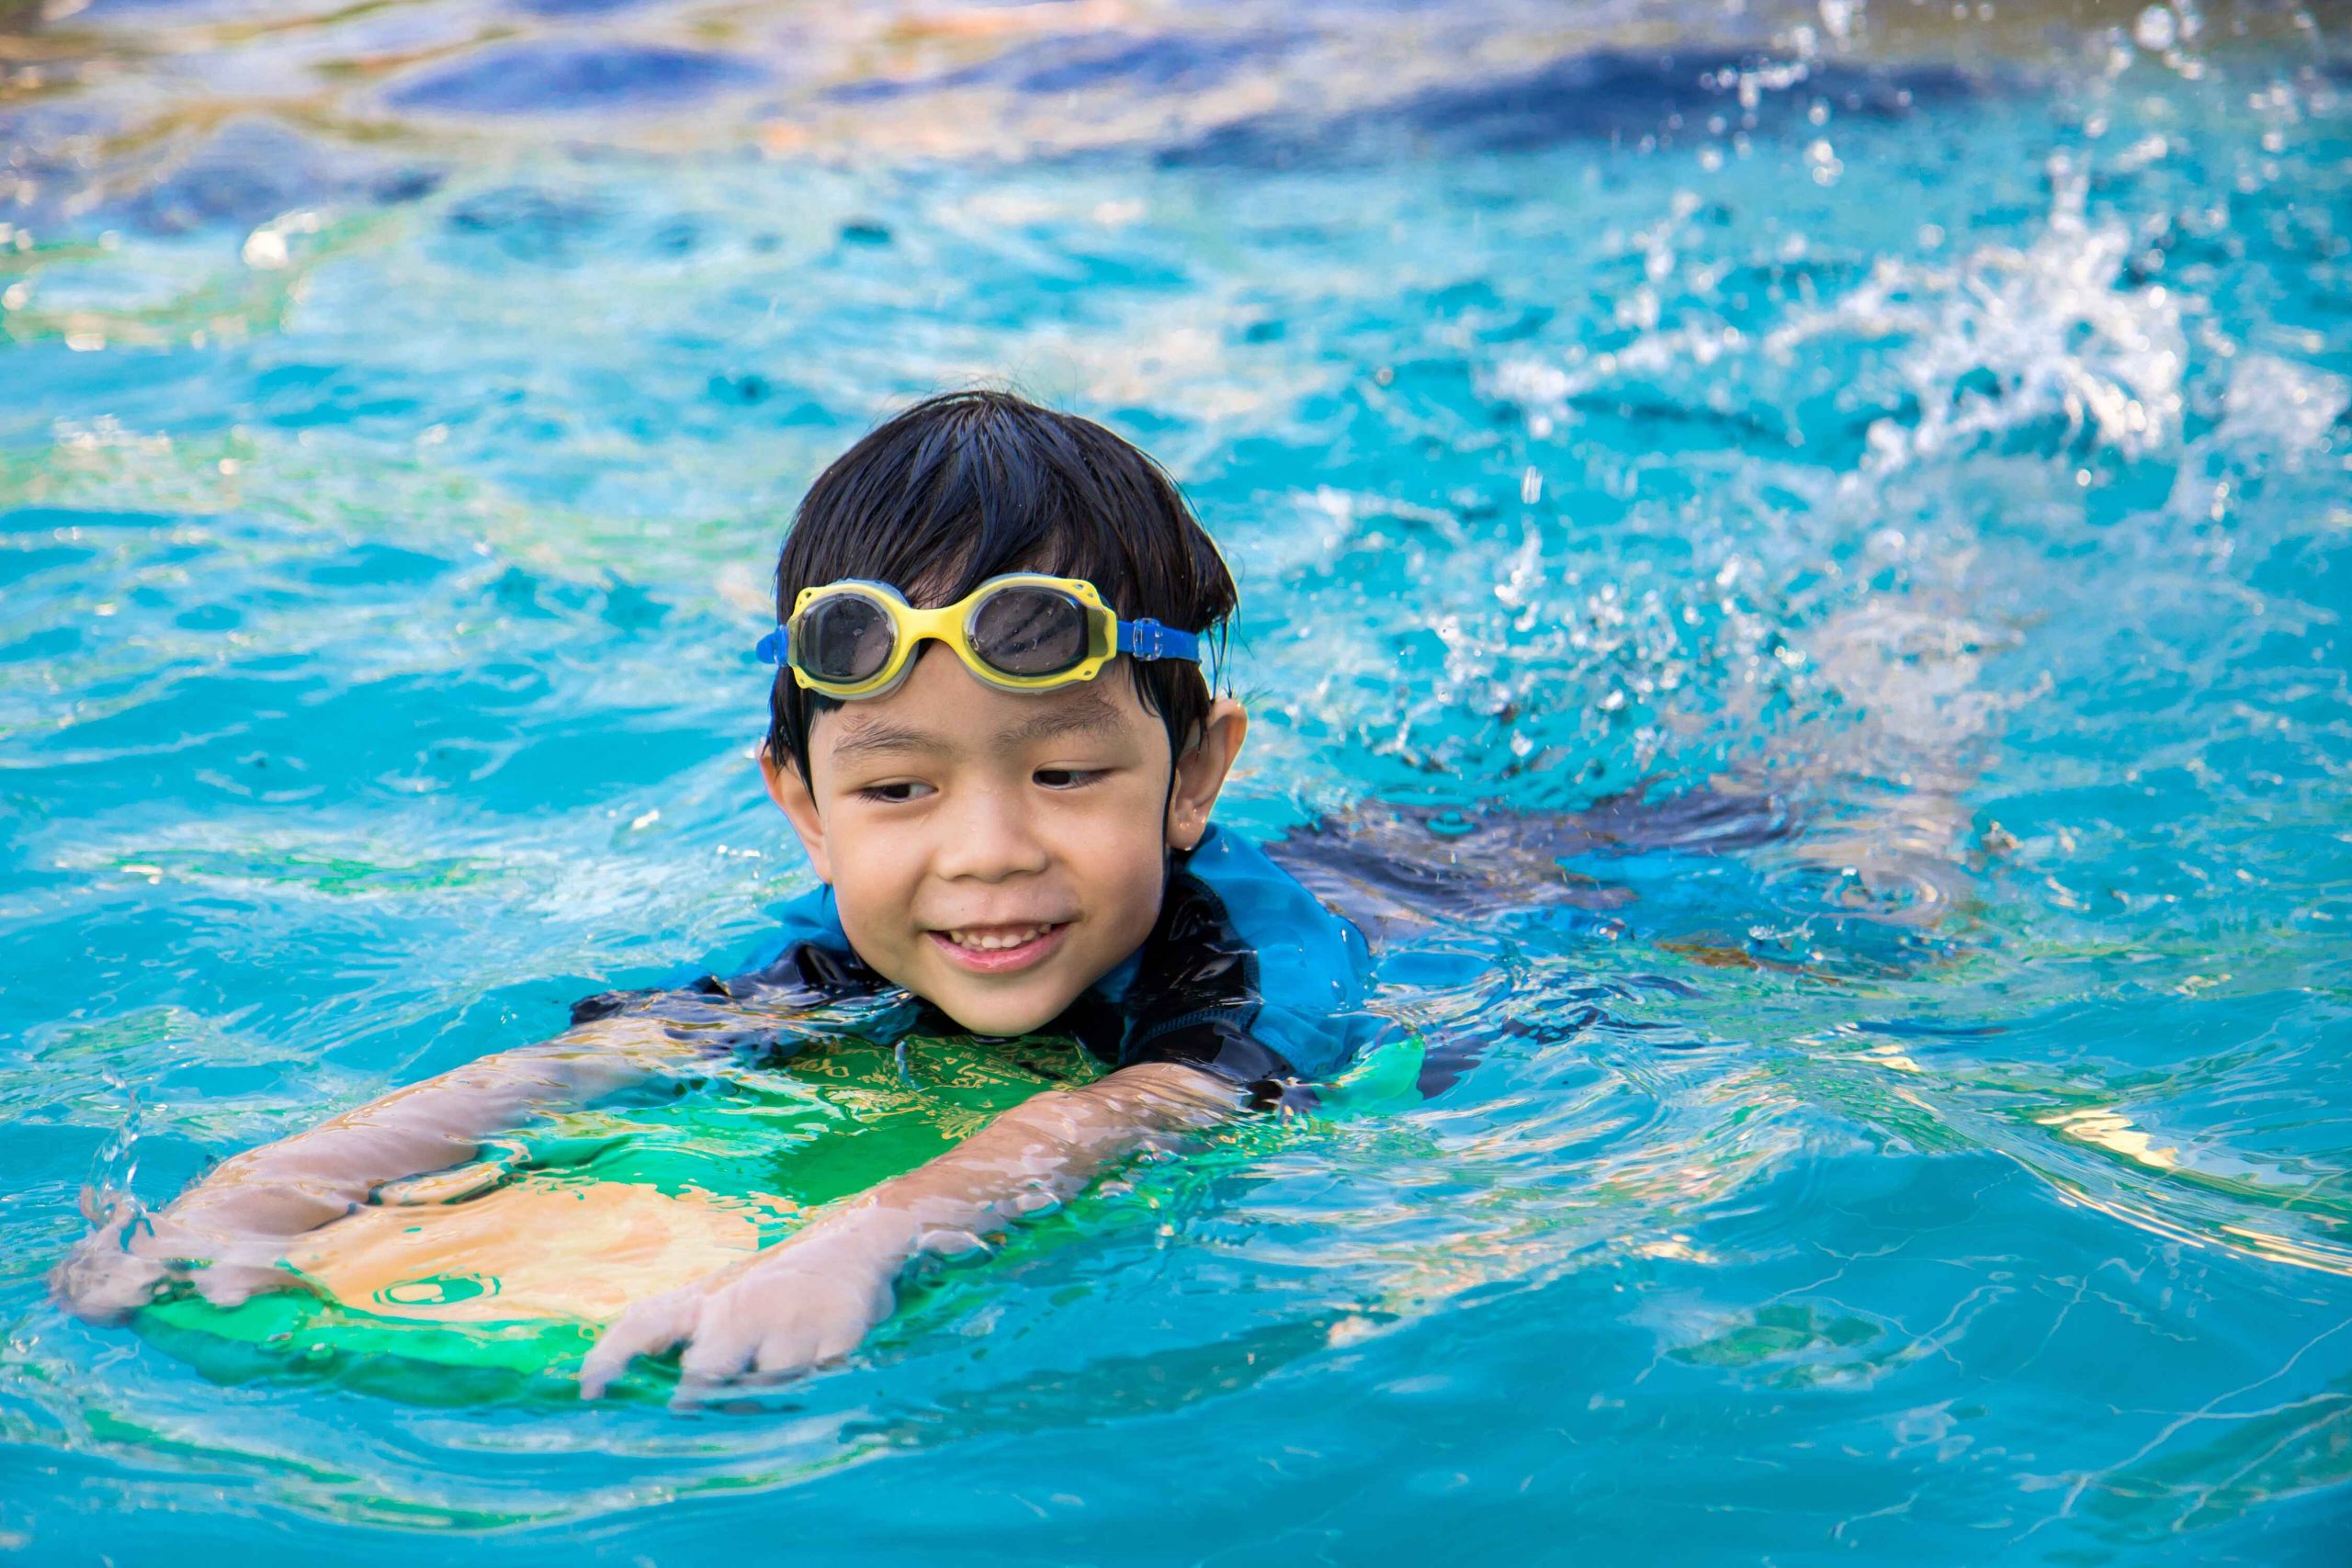 Drowning Prevention Tips for Children | MomDocs